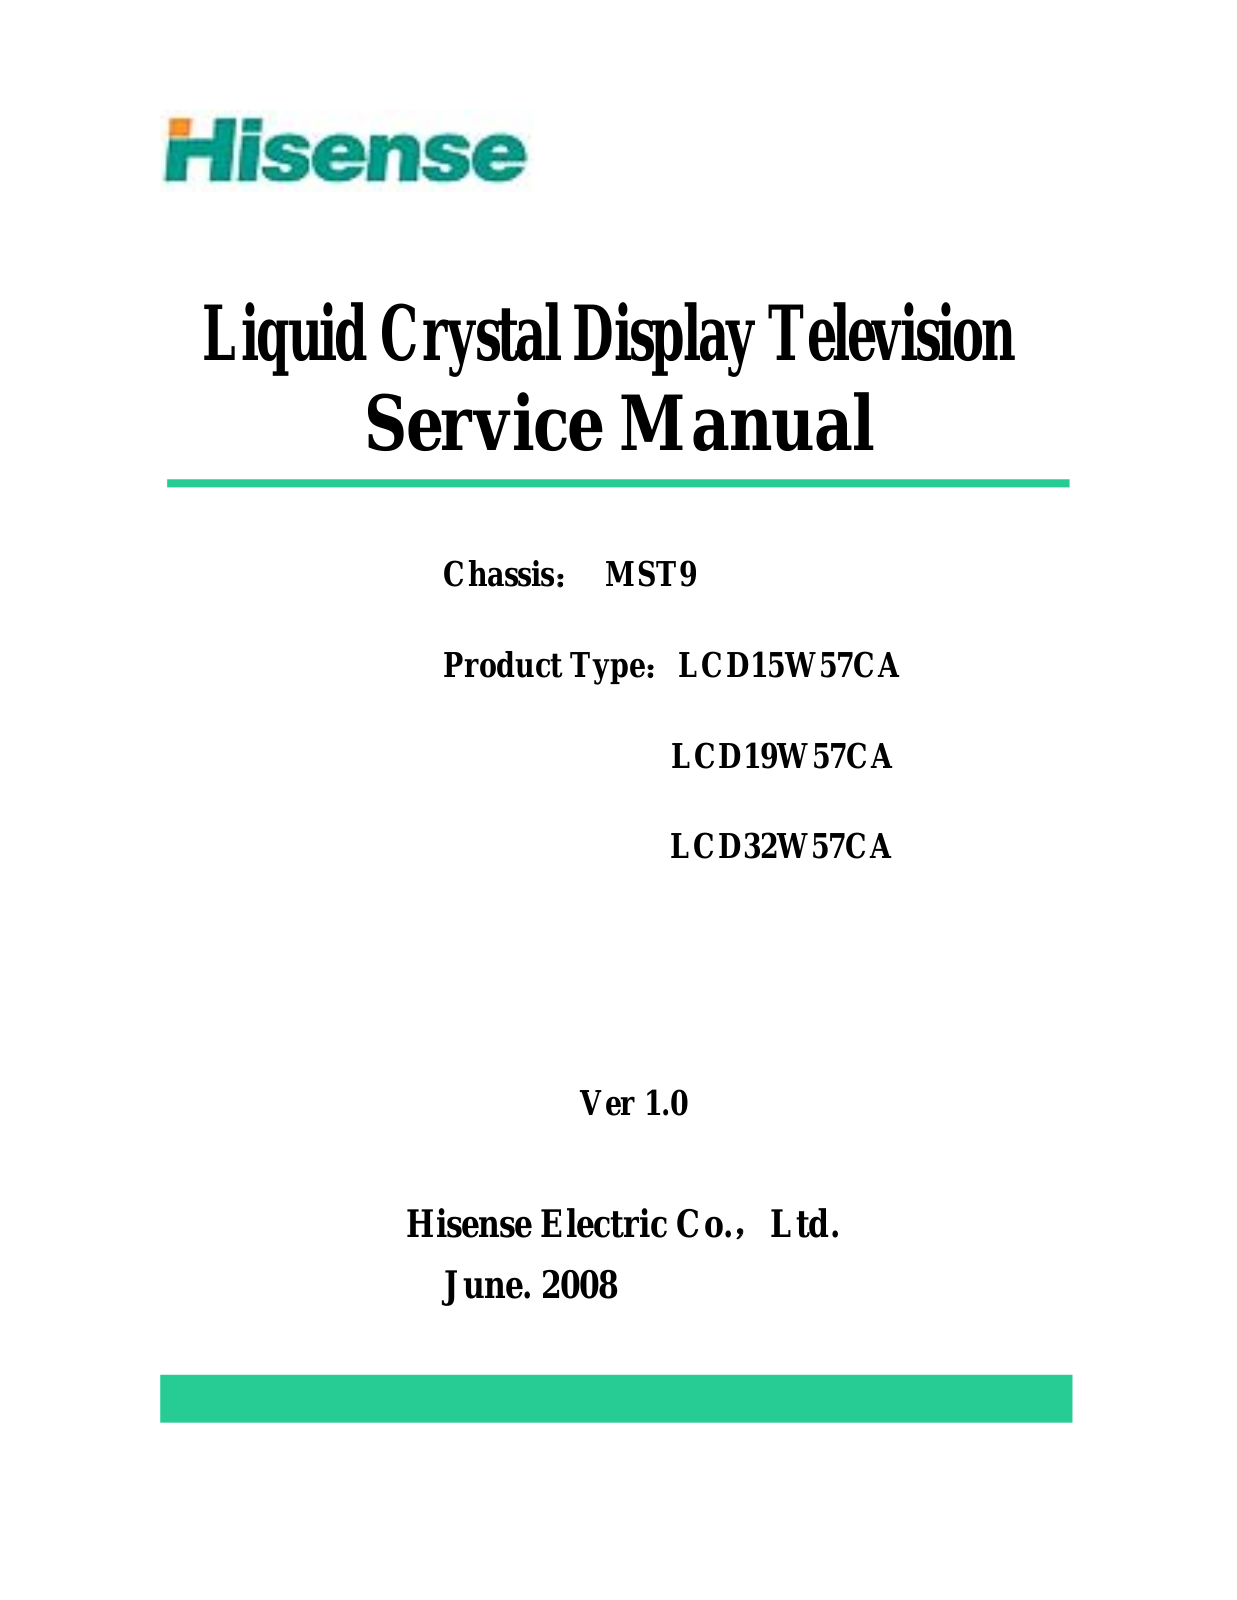 Hisense LCD15W57CA, LCD19W57CA, LCD32W57CA User Manual